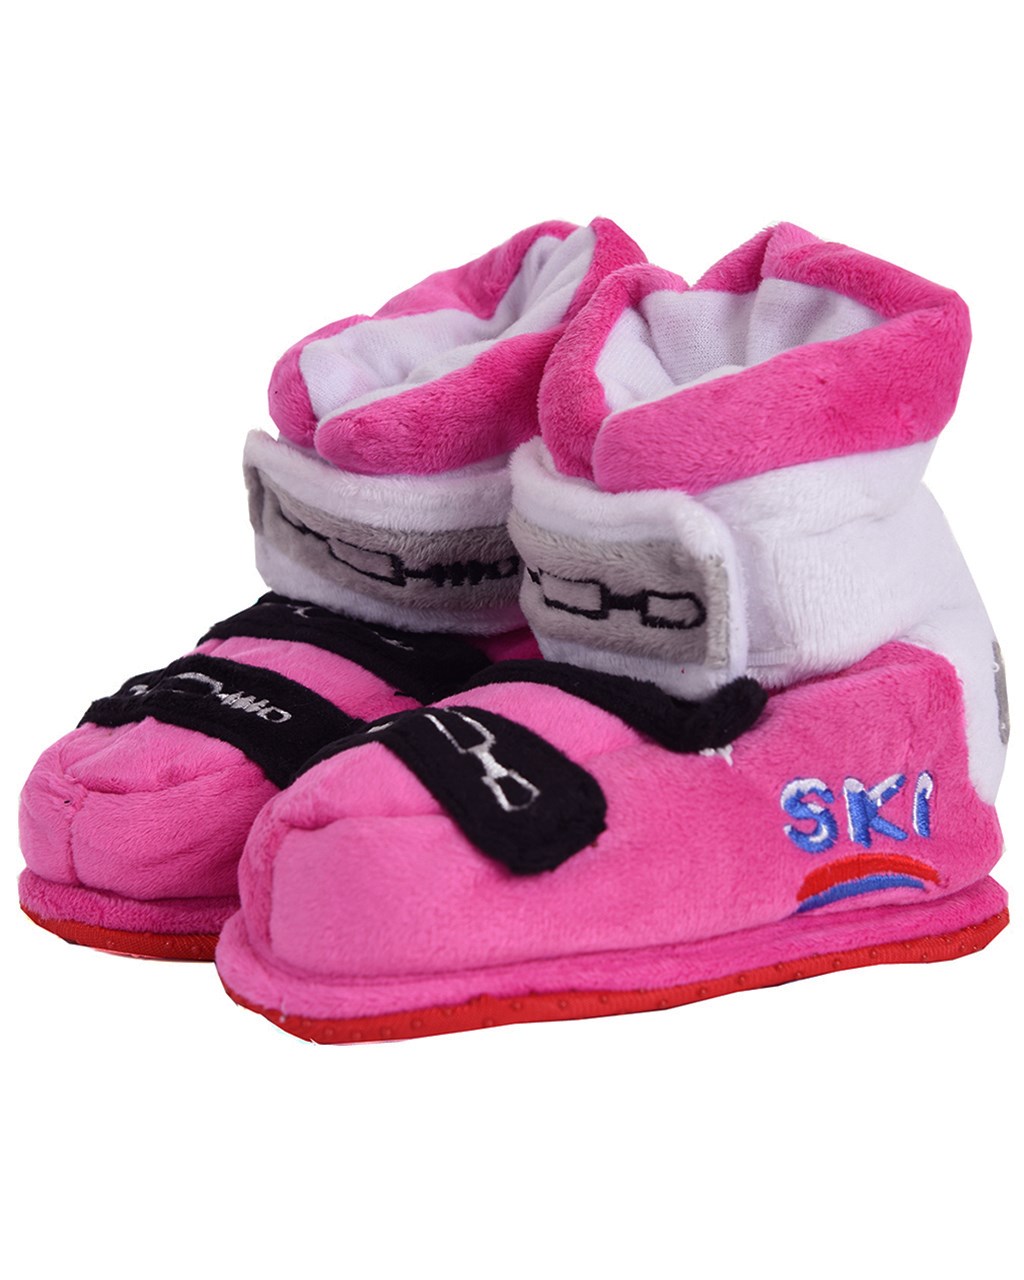 hvede Til sandheden oprindelse Ski Shoe Slippers Baby Pink